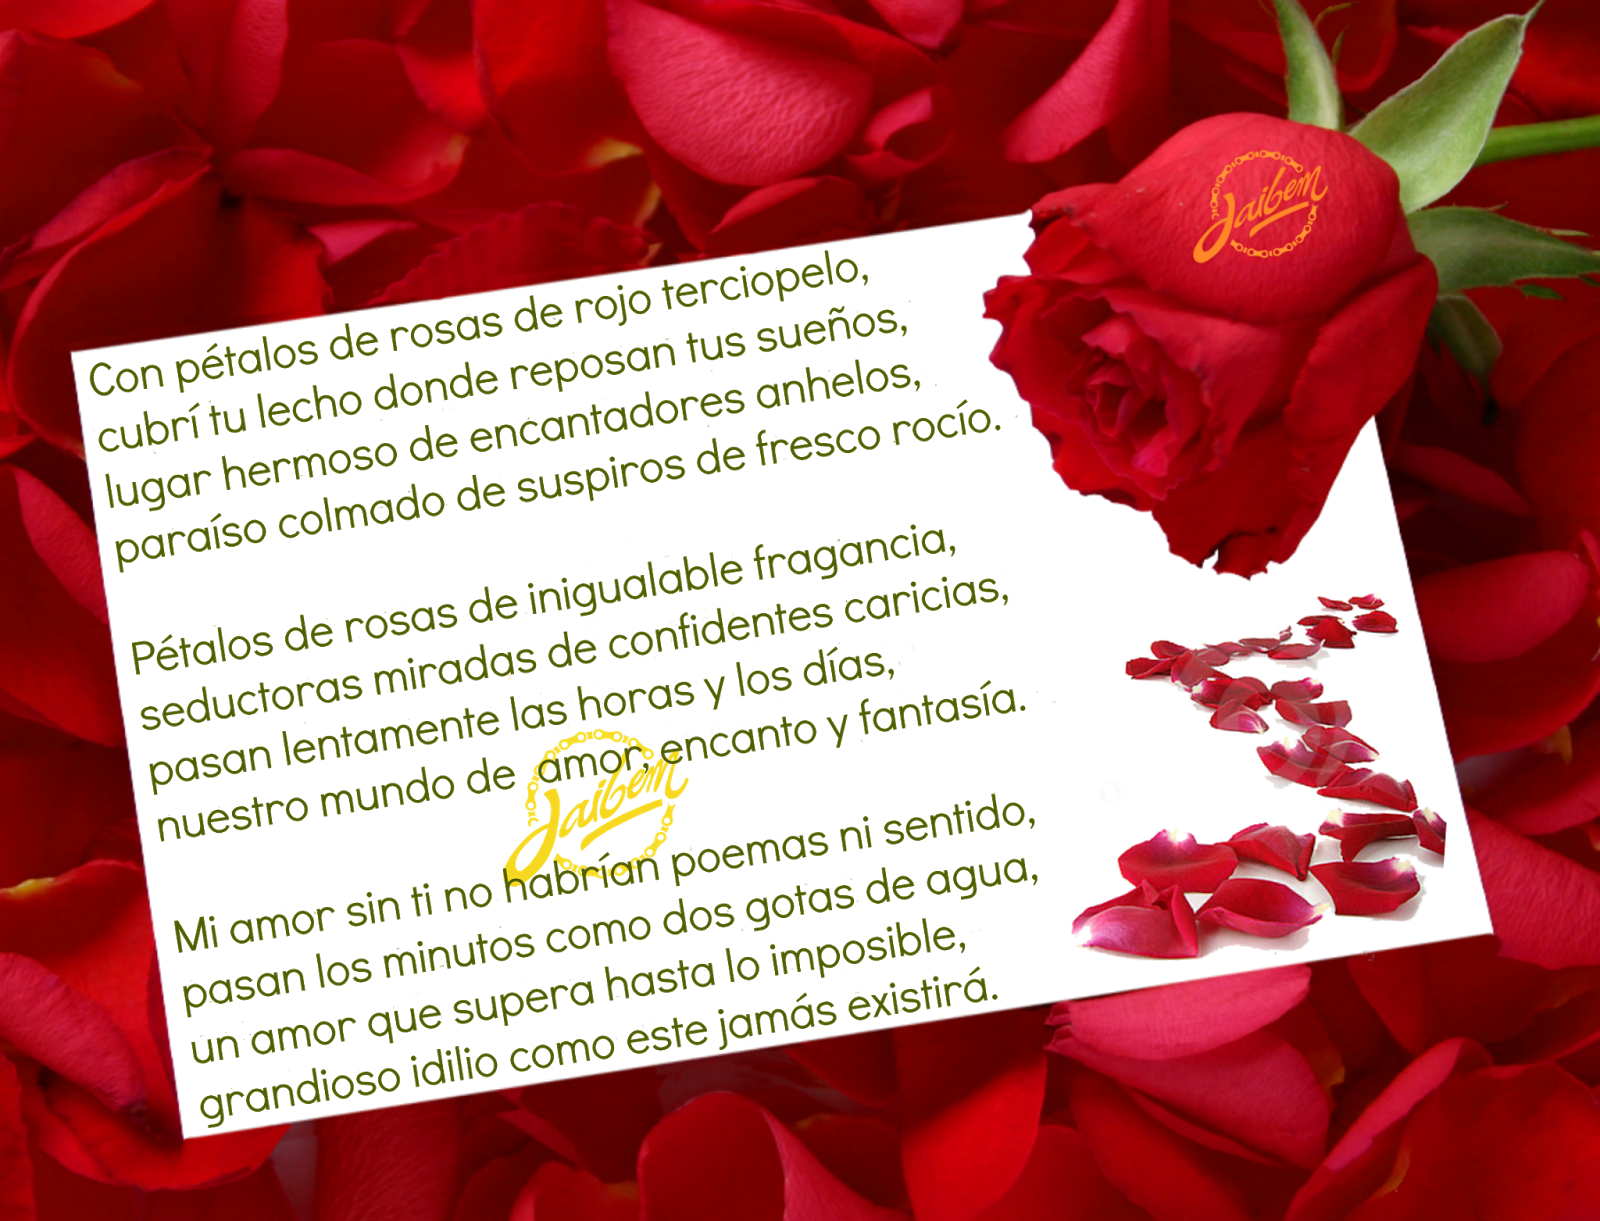 Download Entre Pétalos De Rosas - White Paper With Red Rose PNG Image ...